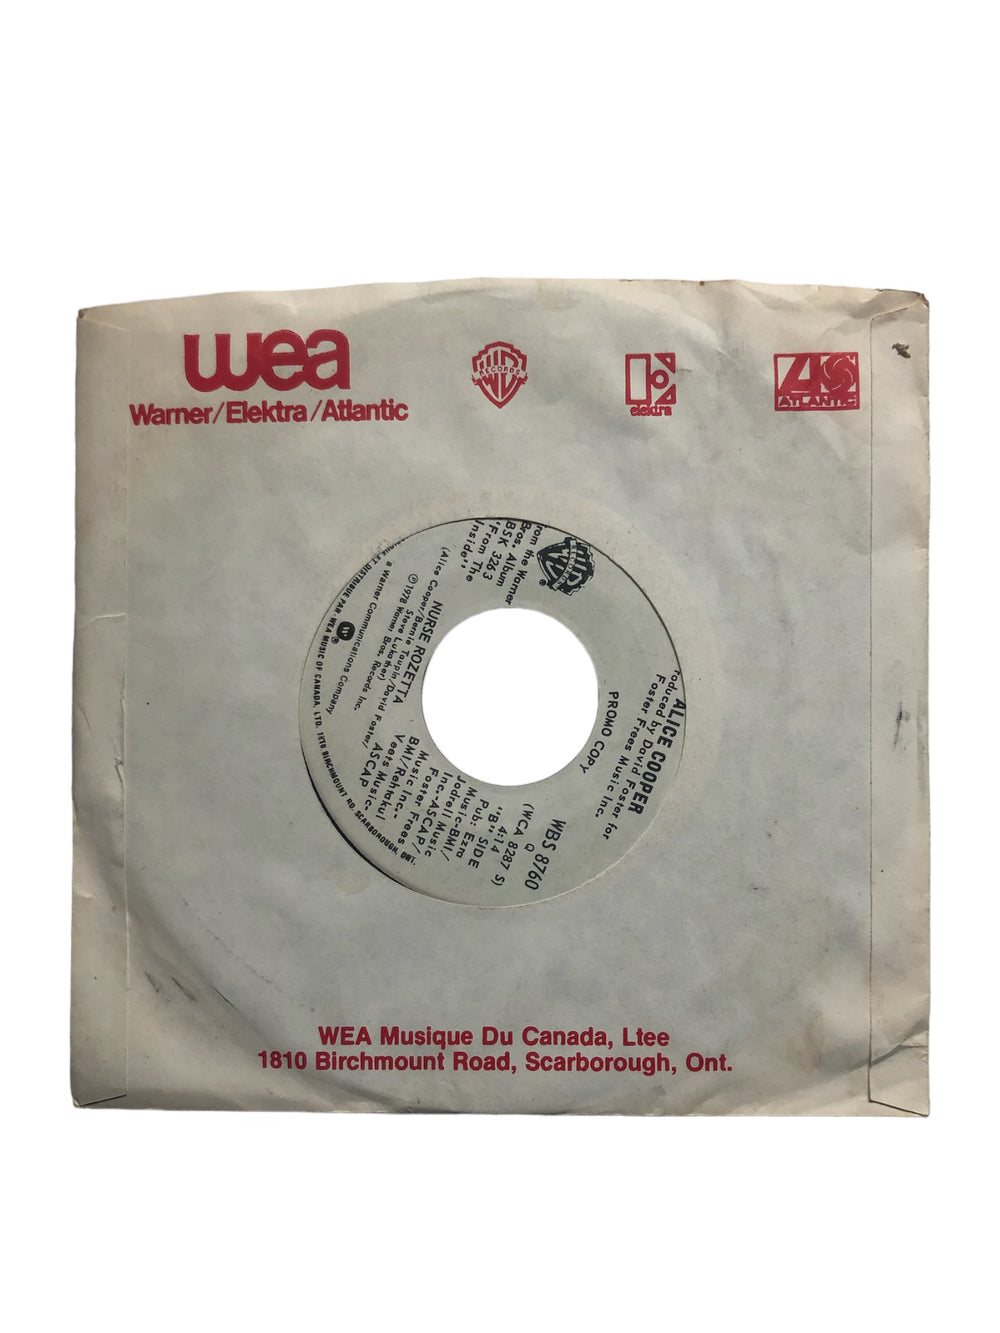 Alice Cooper – From The Inside 7 Inch Vinyl Canada Promo Warner Preloved: 1978